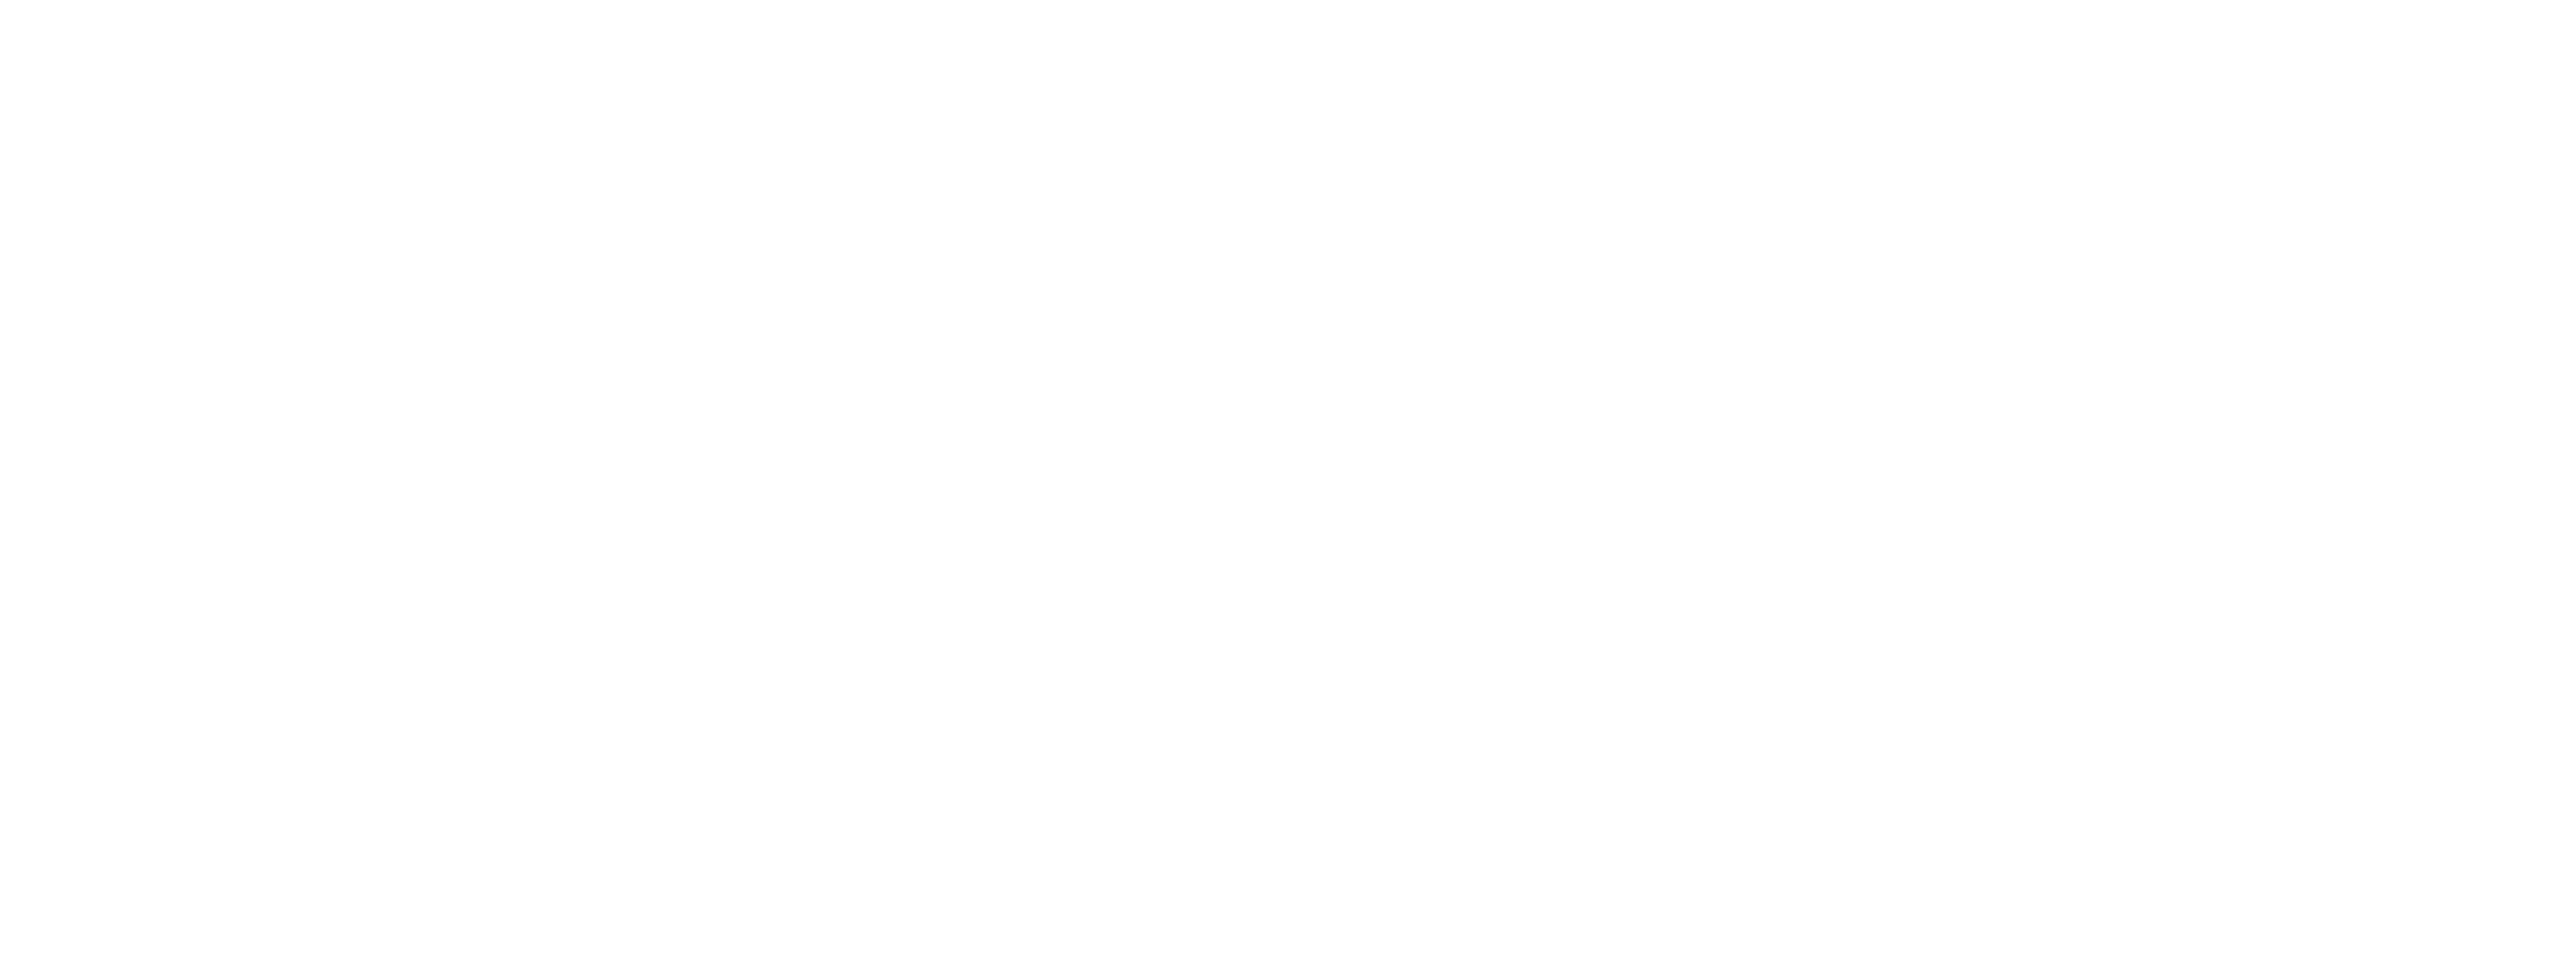 Oracle Utilities